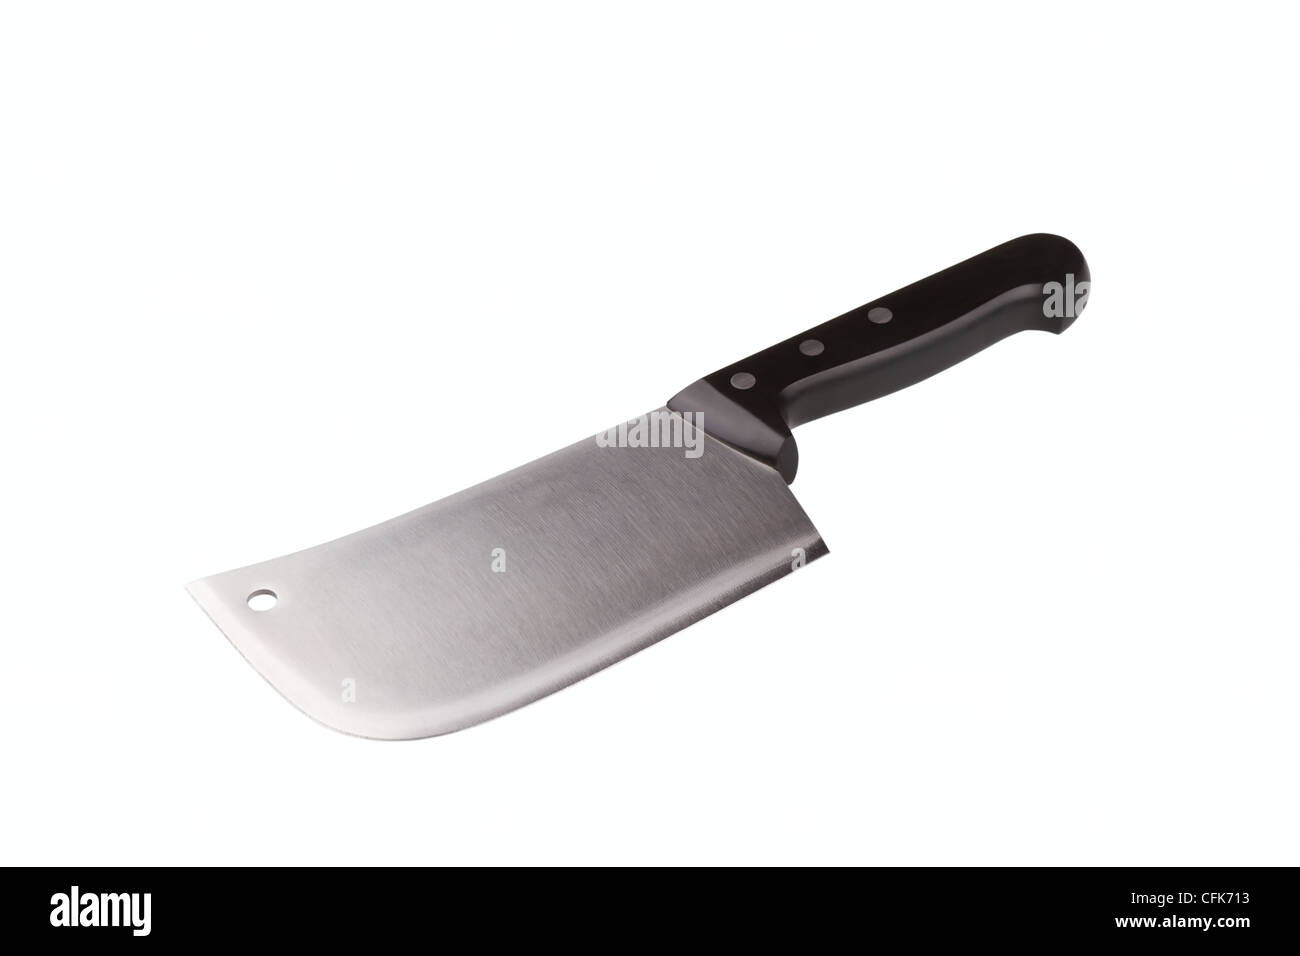 Cucina in acciaio carne cleaver isolato su uno sfondo bianco Foto Stock